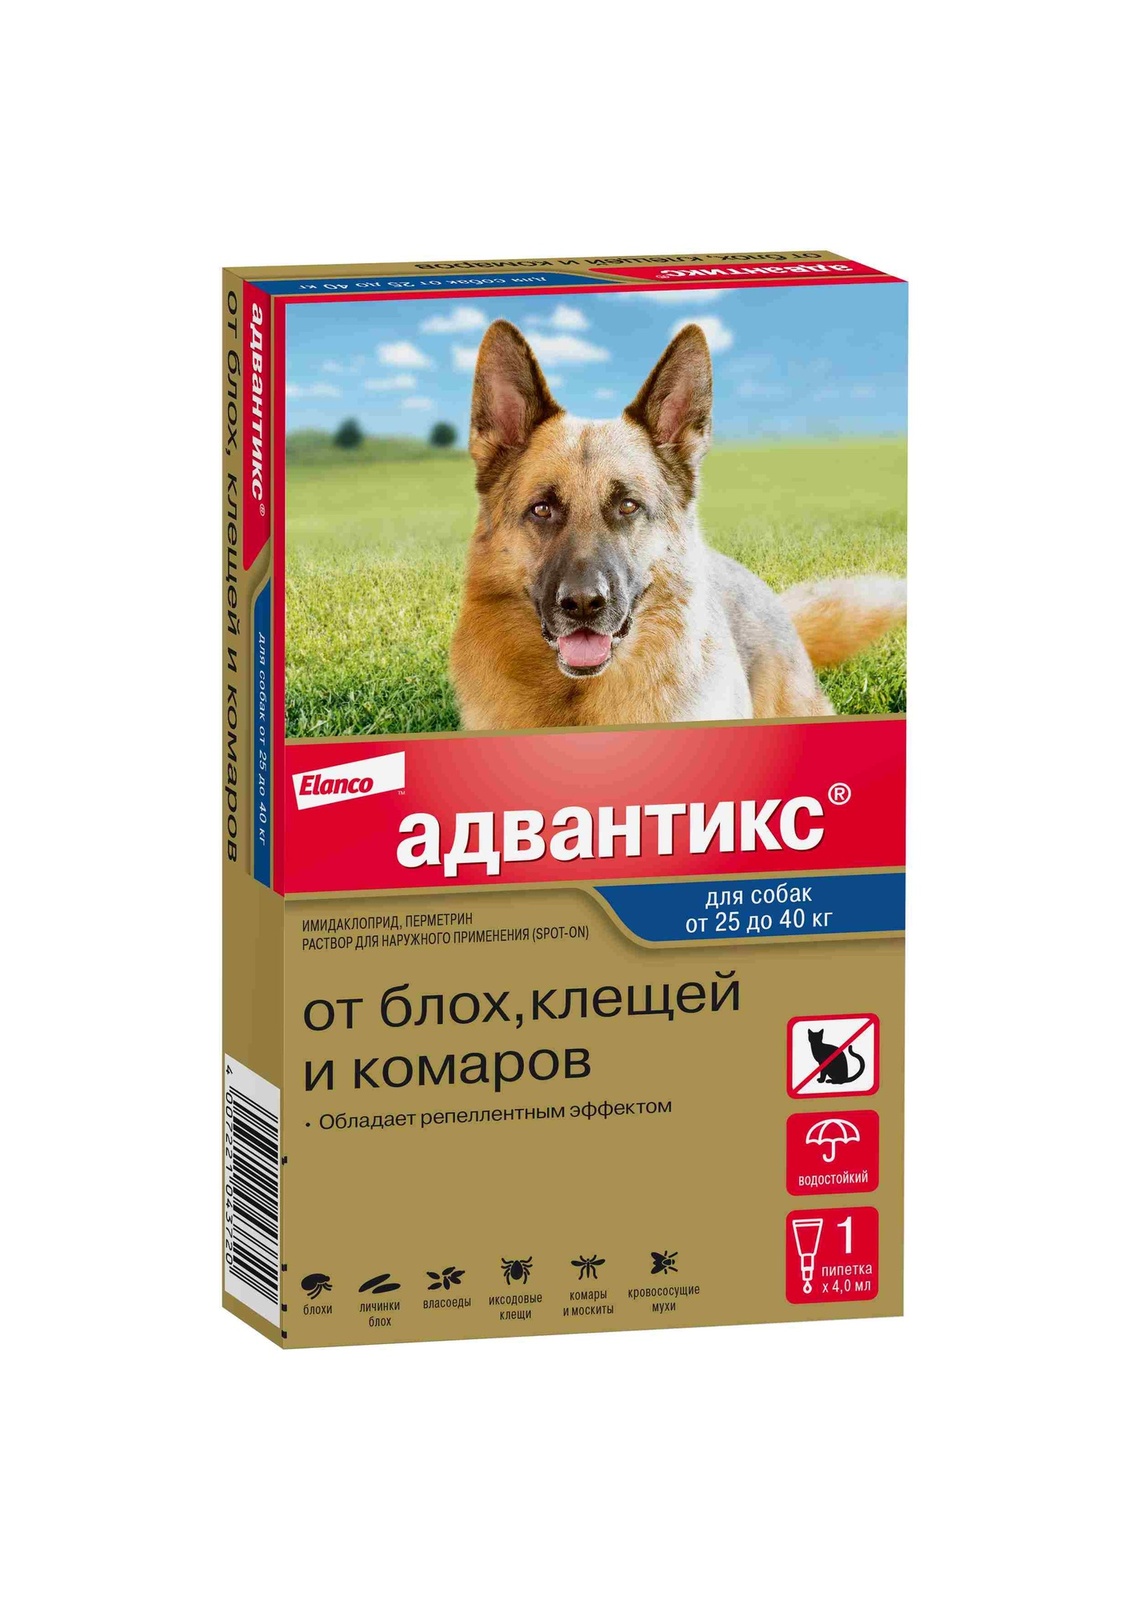 Elanco адвантикс®  для собак от 25 до 40 кг для защиты от блох, иксодовых клещей и летающих насекомых и переносимых ими заболеваний. 1 пипетка в упаковке (1 × 4,0 мл)